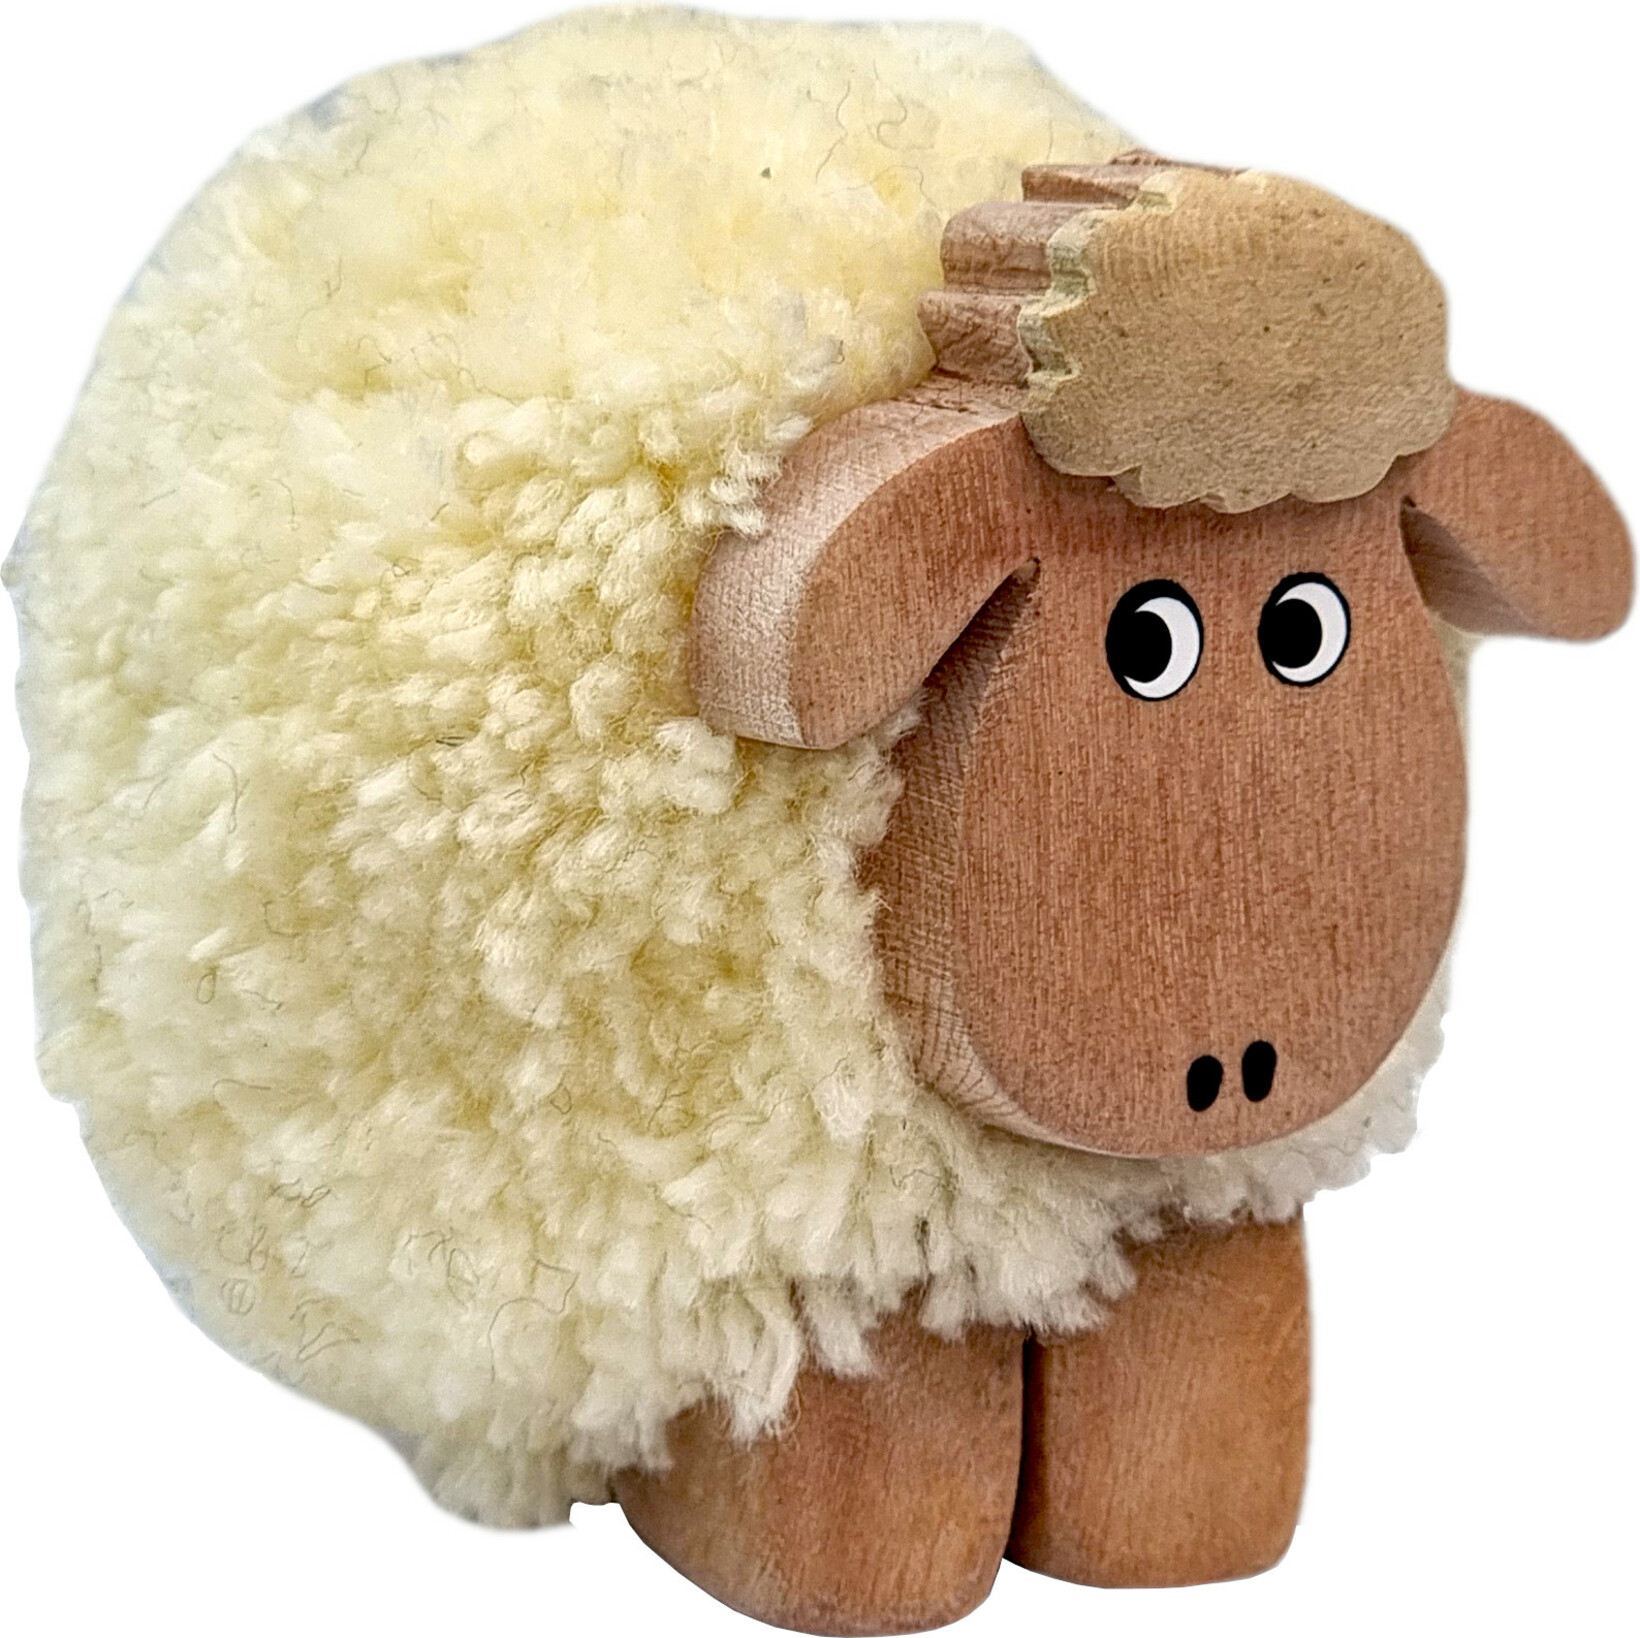 2Kids Toys Dřevěná figurka XL pompon Ovce